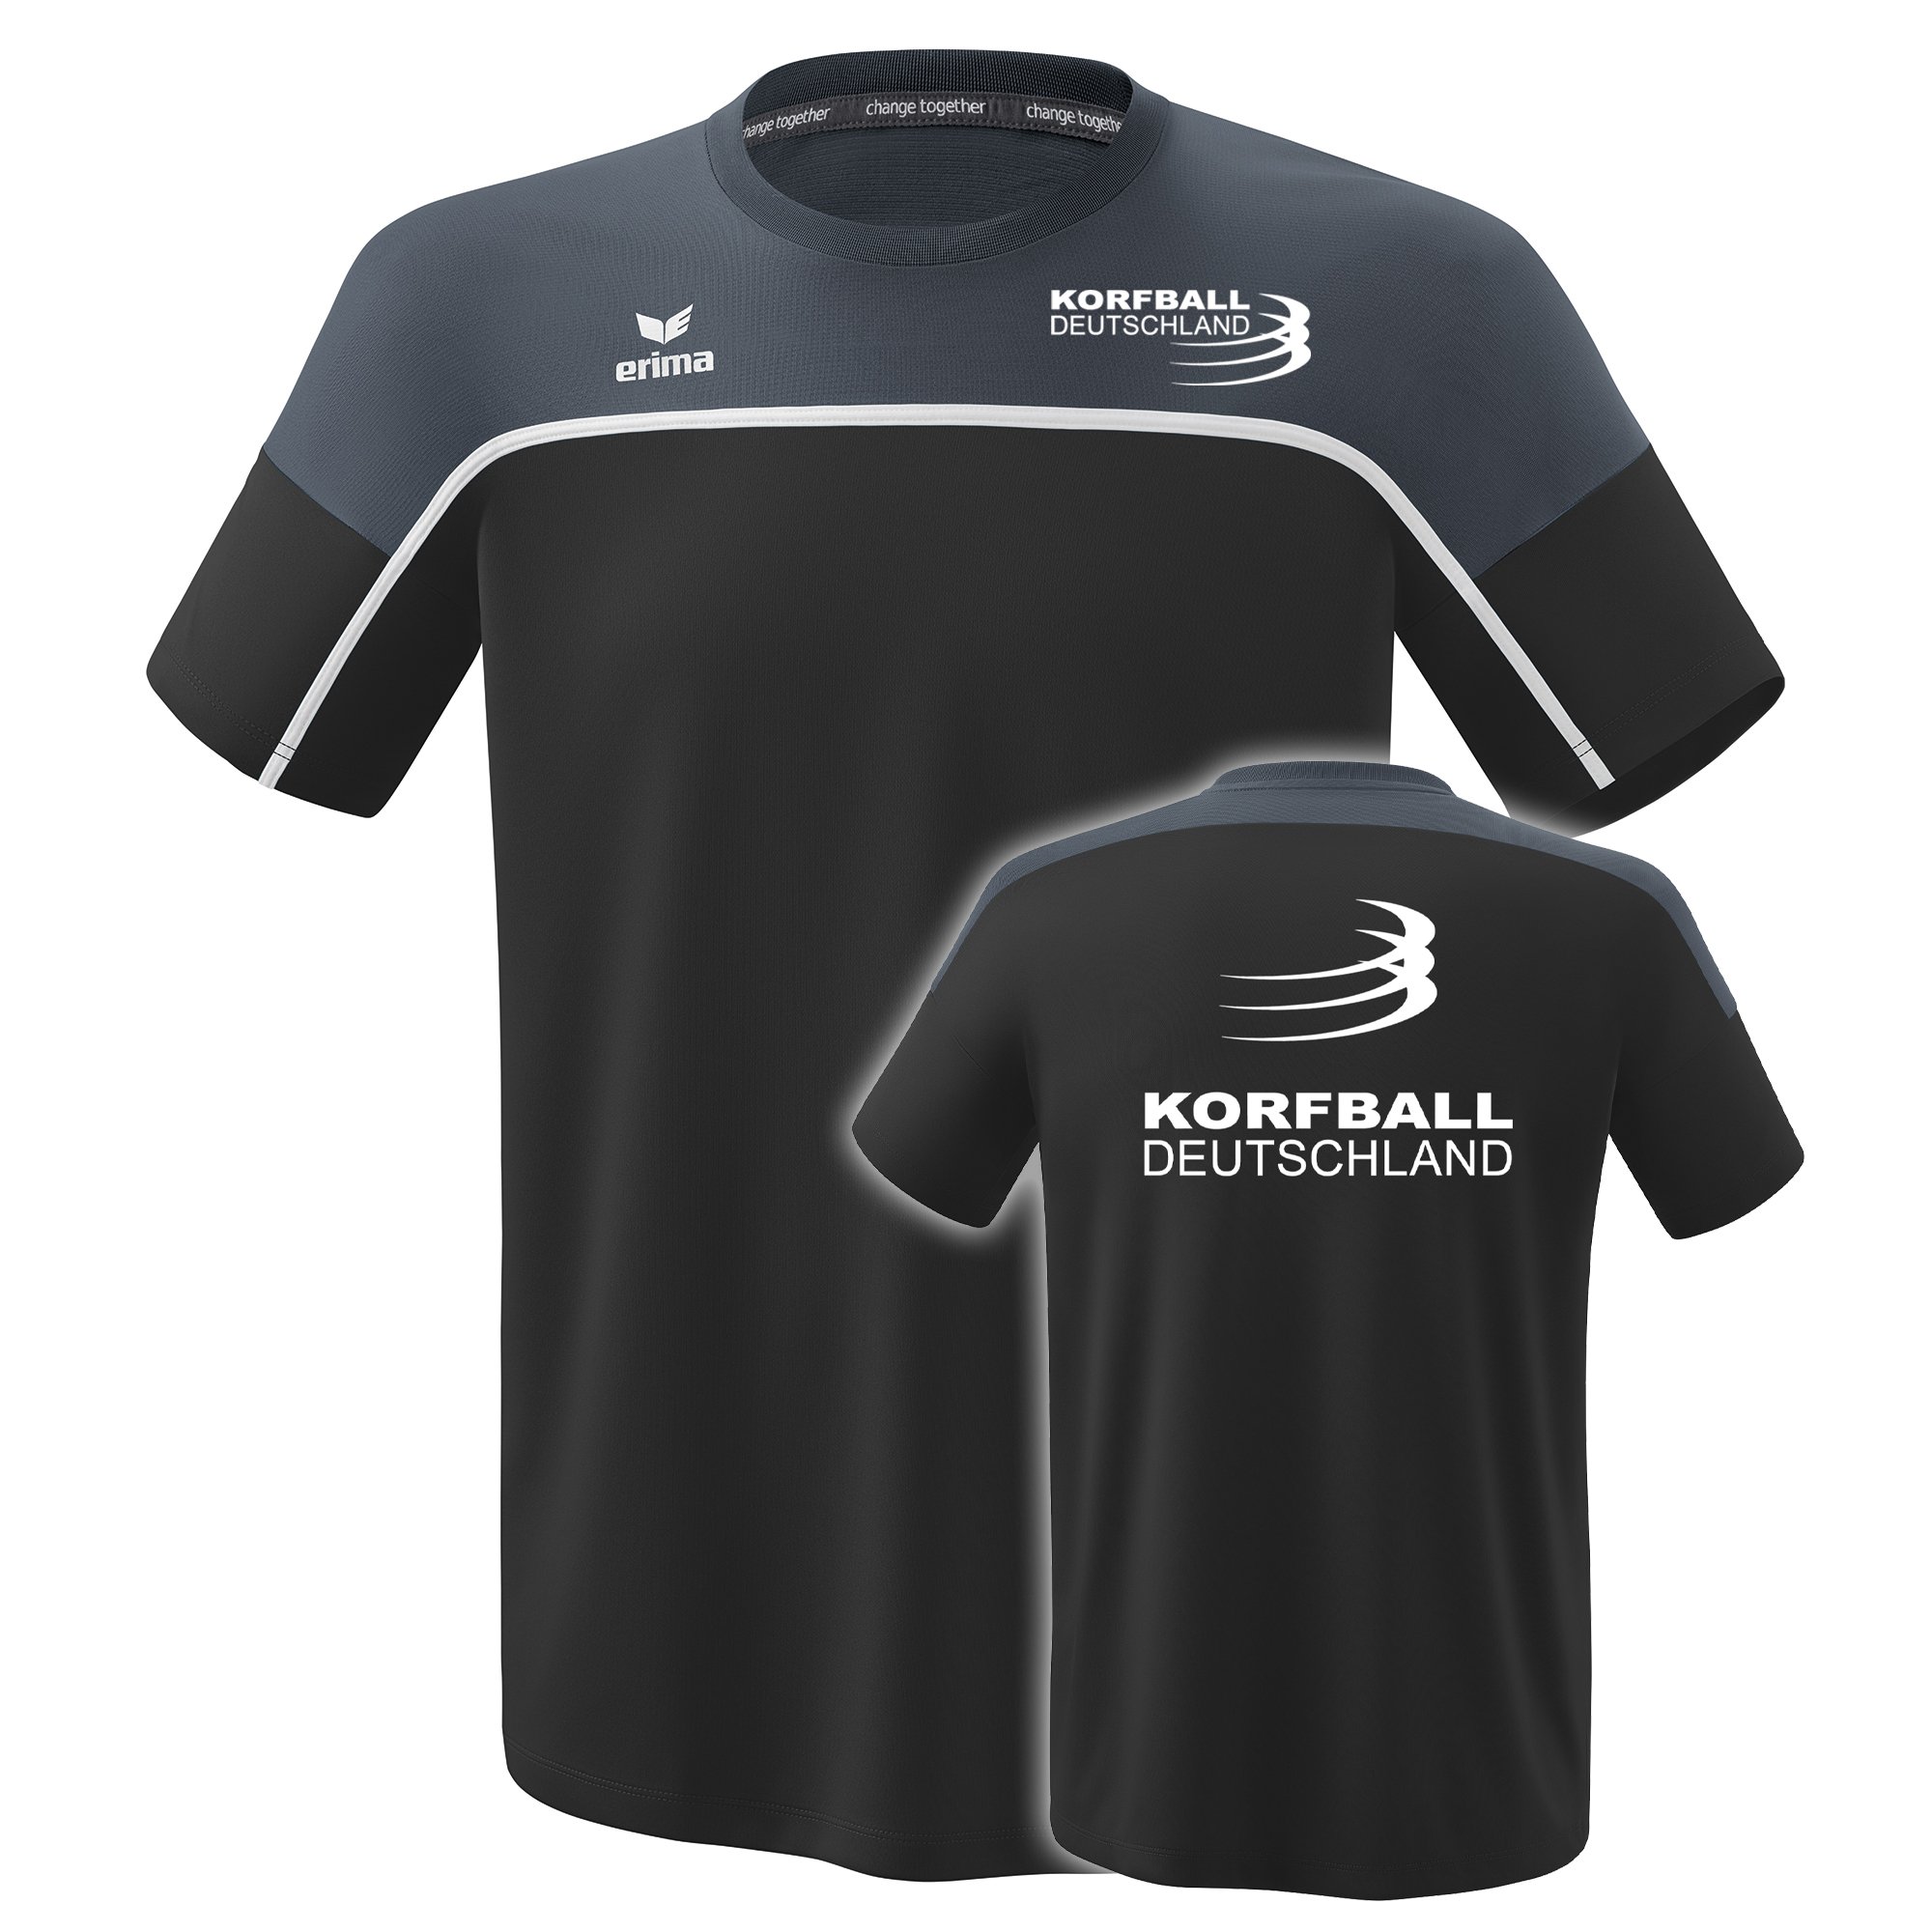 Korfball Deutschland T-Shirt